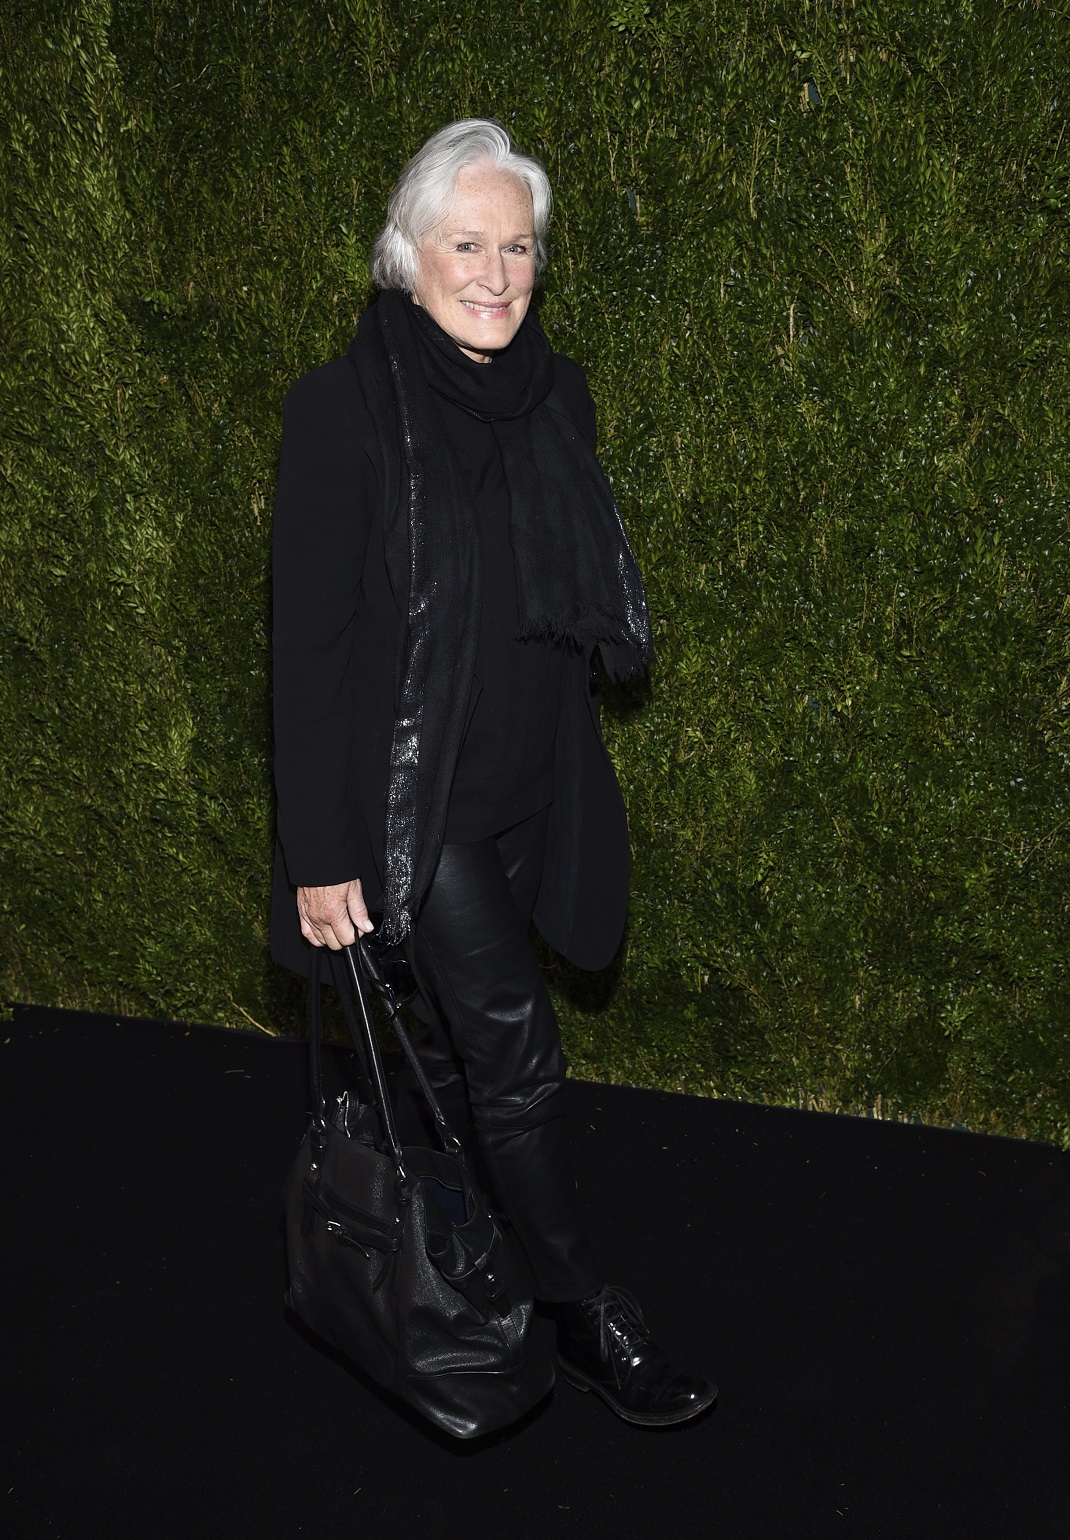 Η Γκλεν Κλόουζ σε εμφάνισή της με μαύρο σύνολο και μαύρη τσάντα